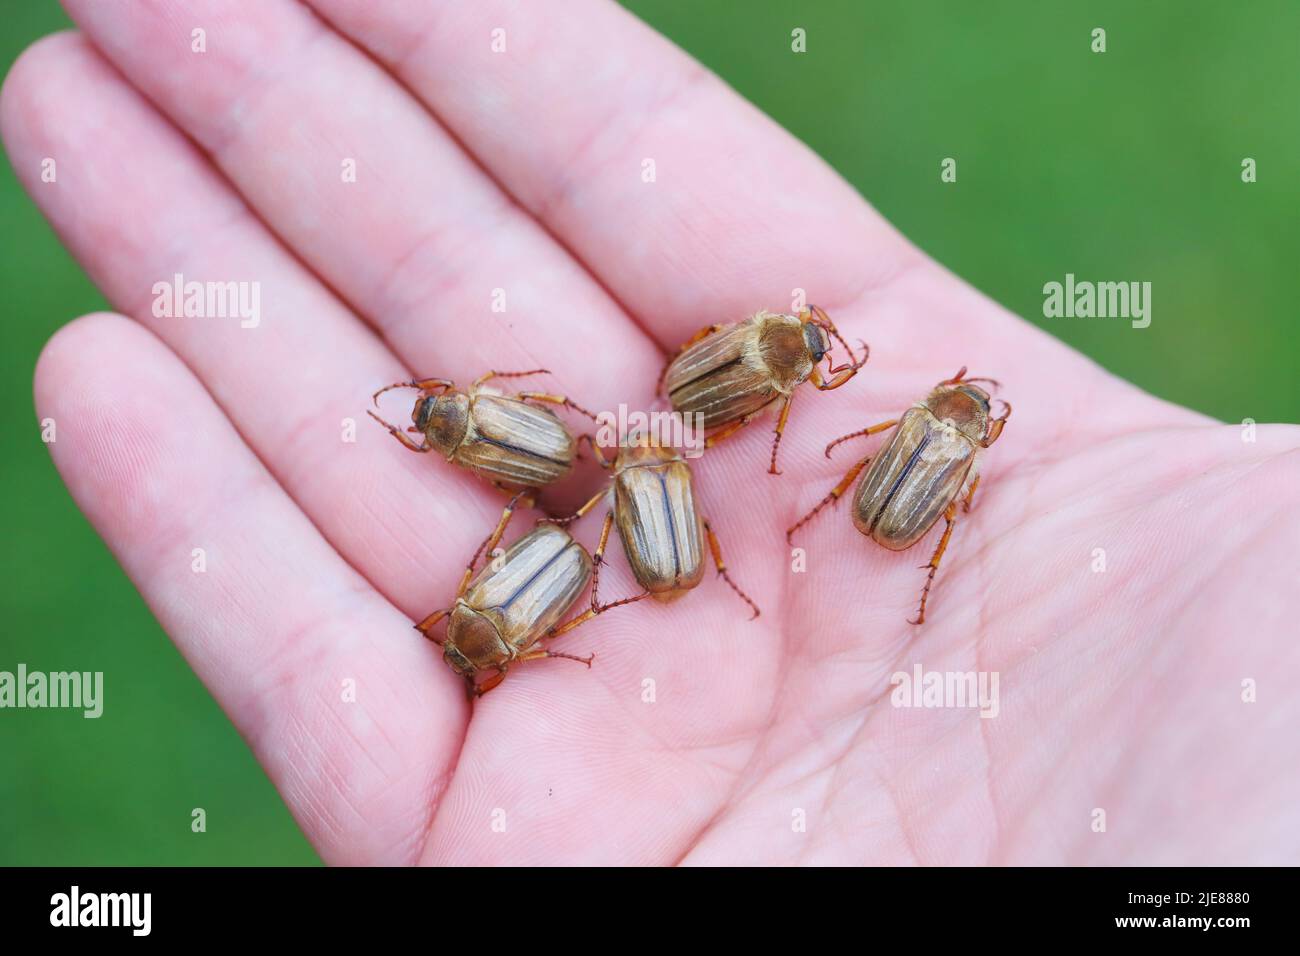 Sommerkäfer oder Junikäfer (Amphimallon solstitialis). Käfer auf der Hand. Stockfoto